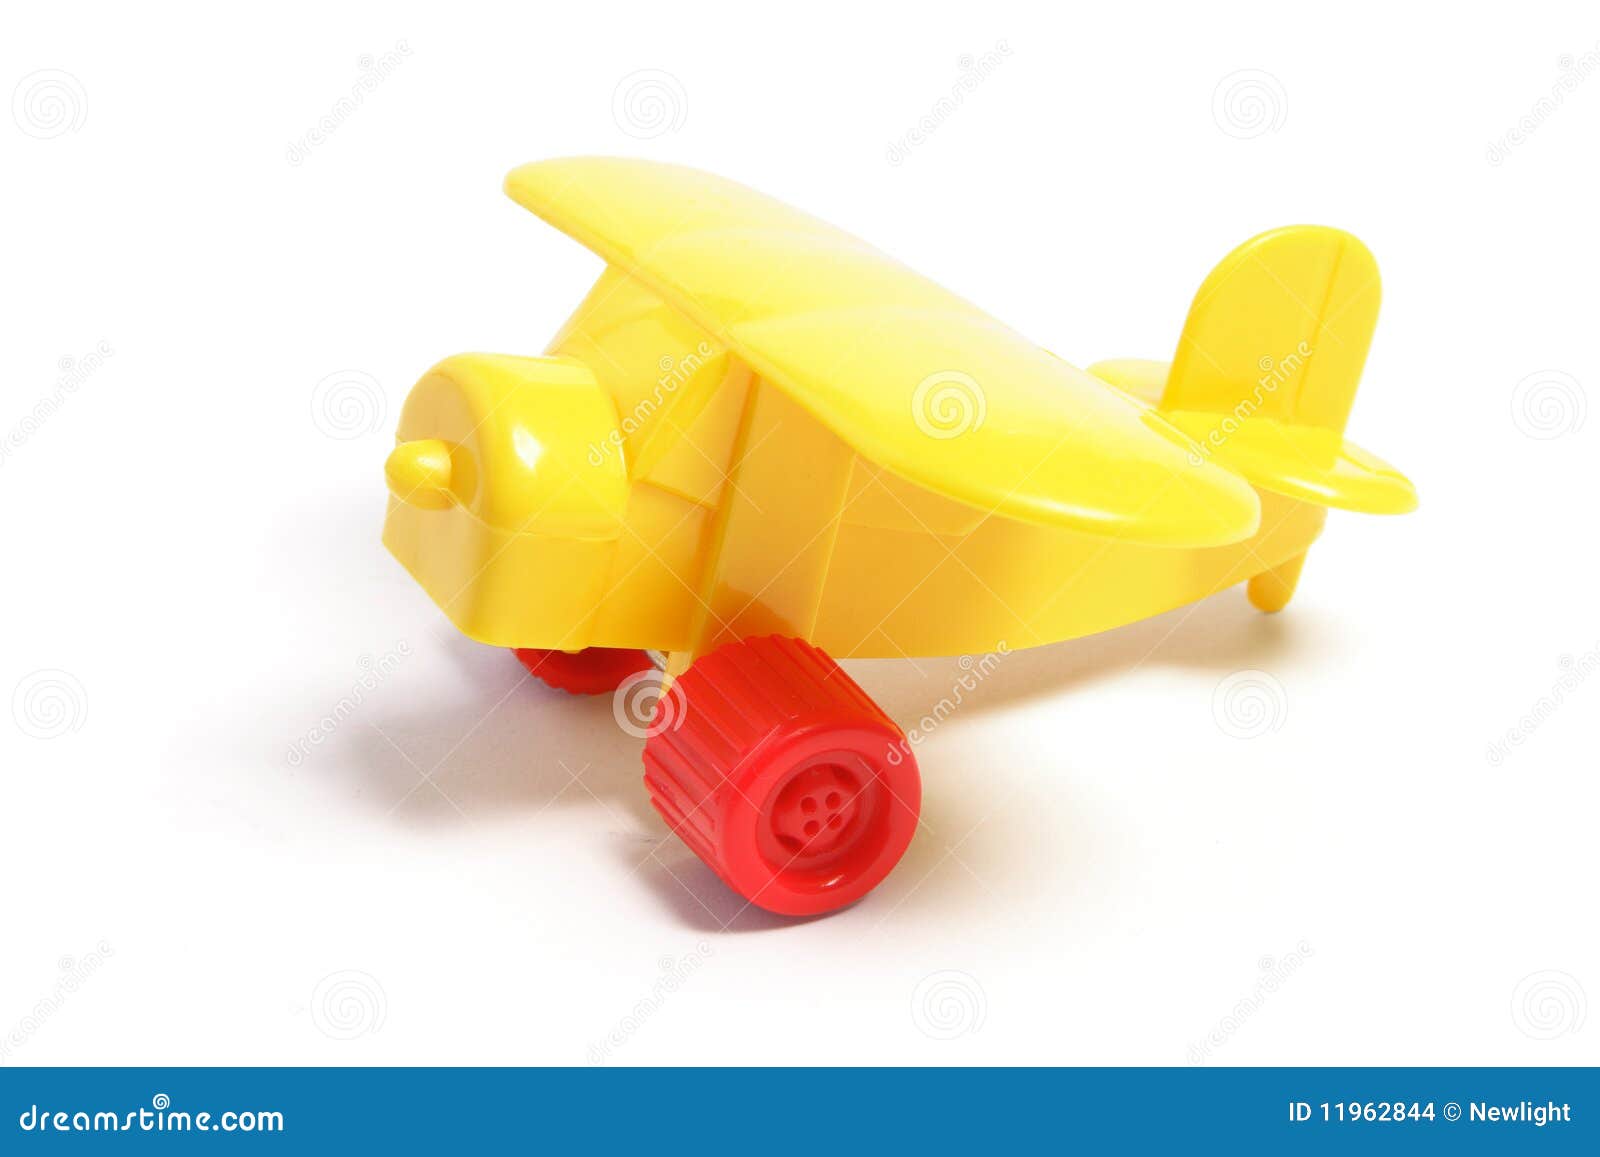 jouet avion plastique